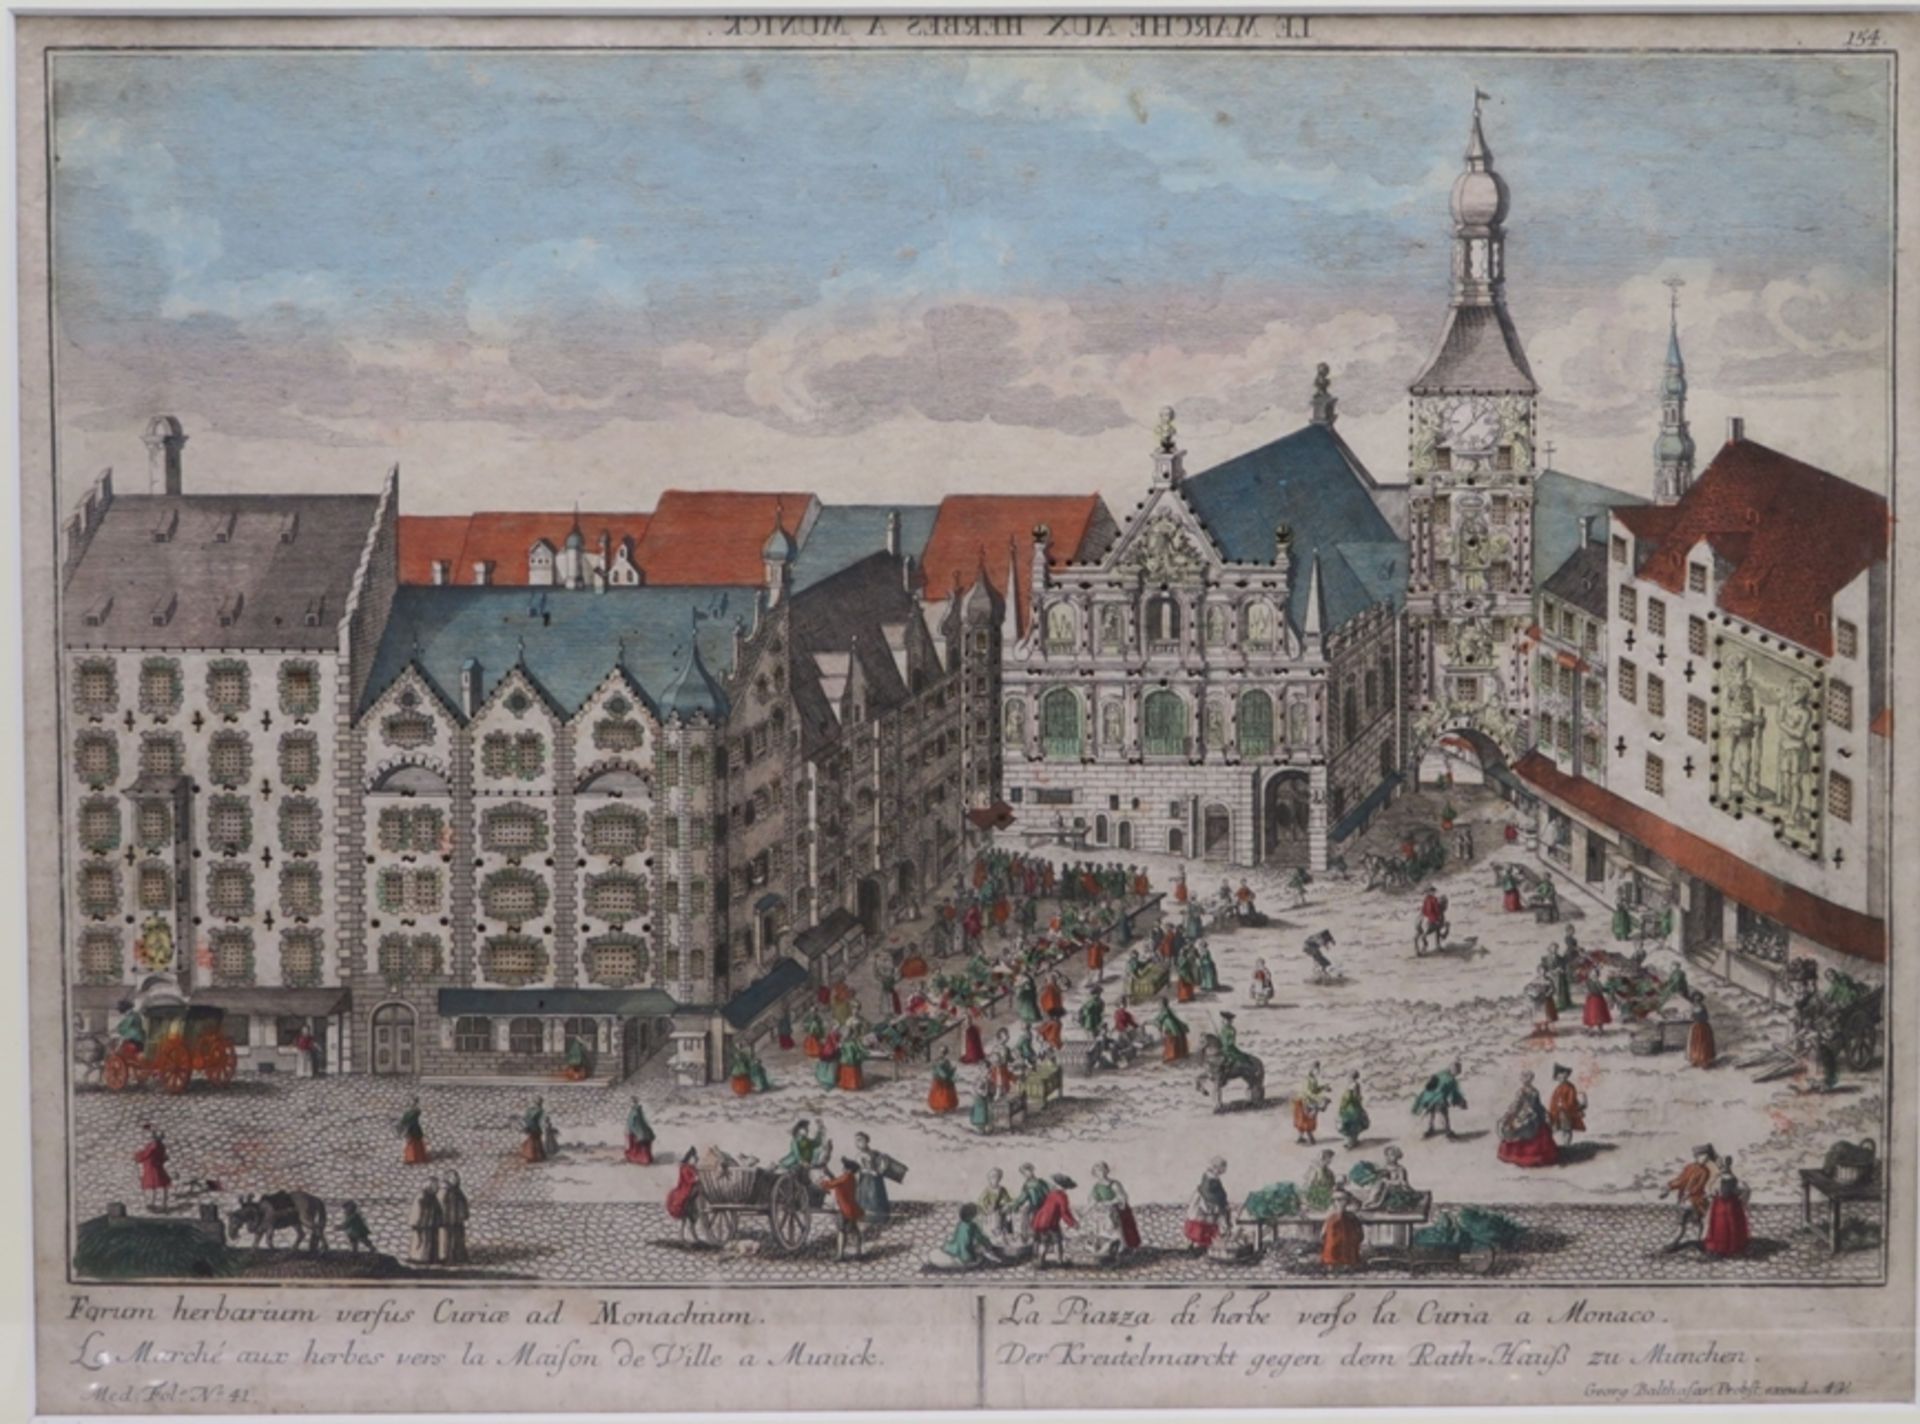 Probst, Georg Balthasar, um 1770, "Der Kreutelmarckt gegen dem Rath=Hauß zu München", Guckkastenbil